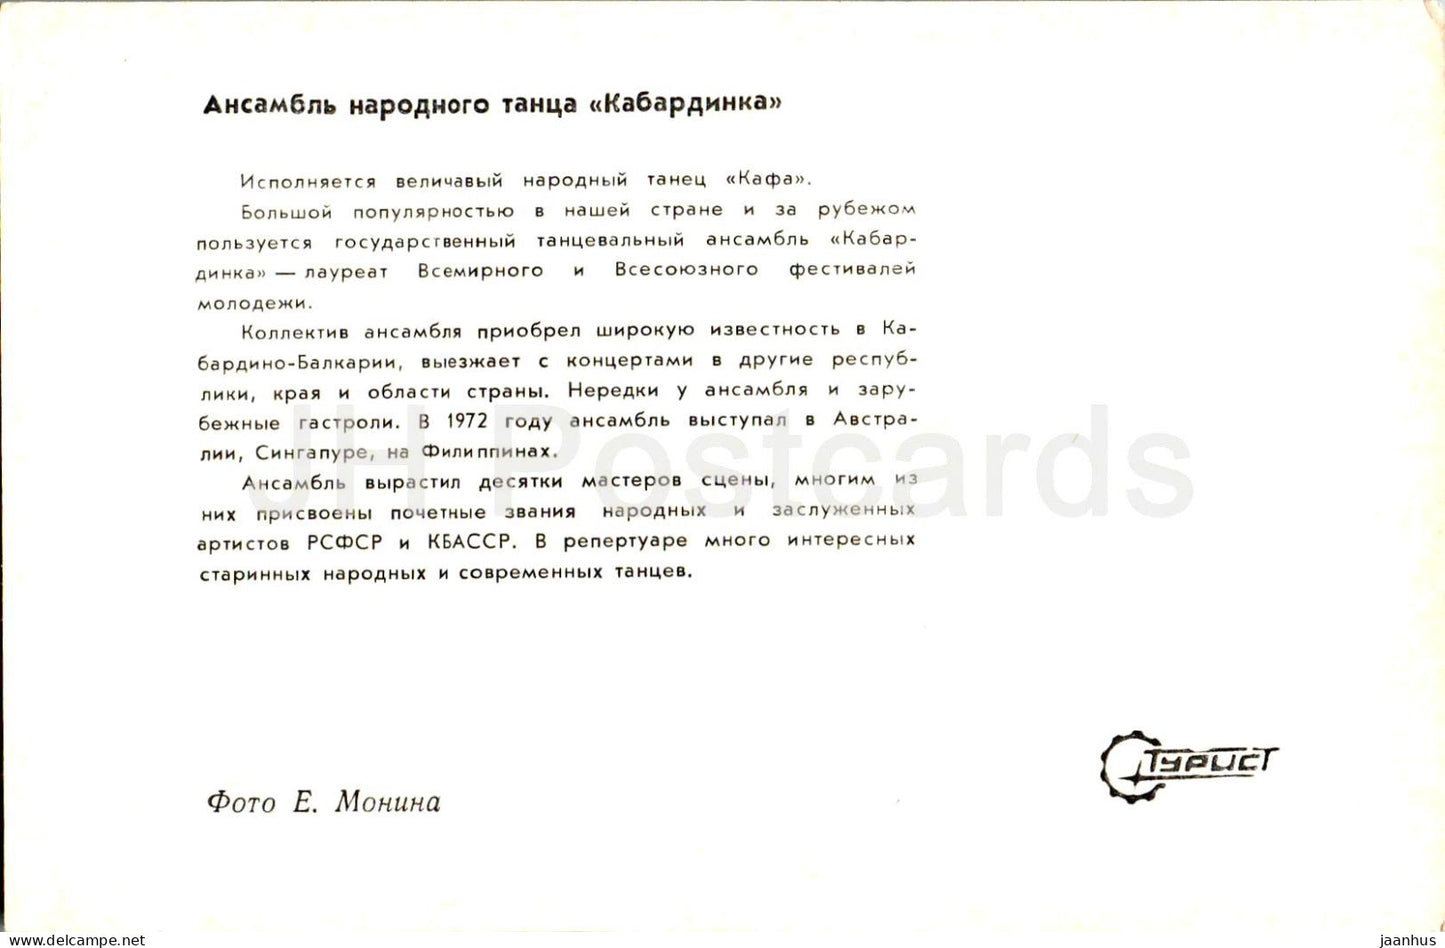 Kabardinka Volkstanzensemble - Volkstrachten - Kabardino-Balkarien - Turist - 1973 - Russland UdSSR - unbenutzt 